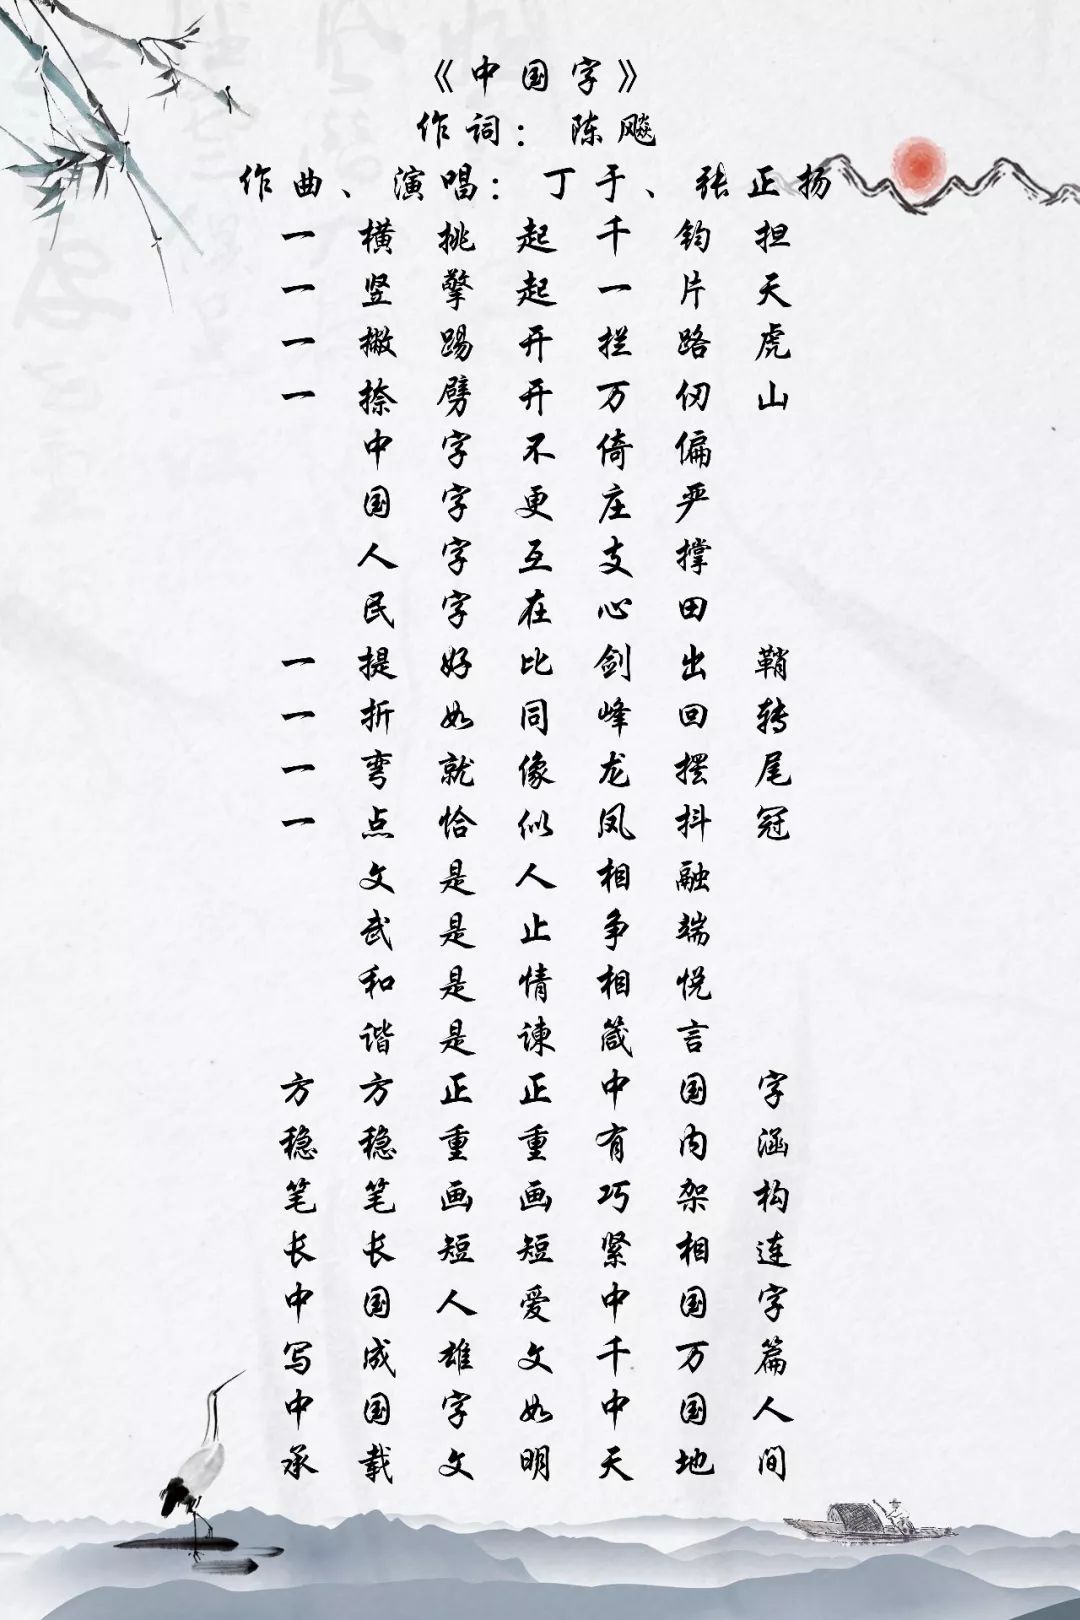 这首传承中国传统文化底蕴 展现中国汉字独特魅力的歌曲 作词人到底